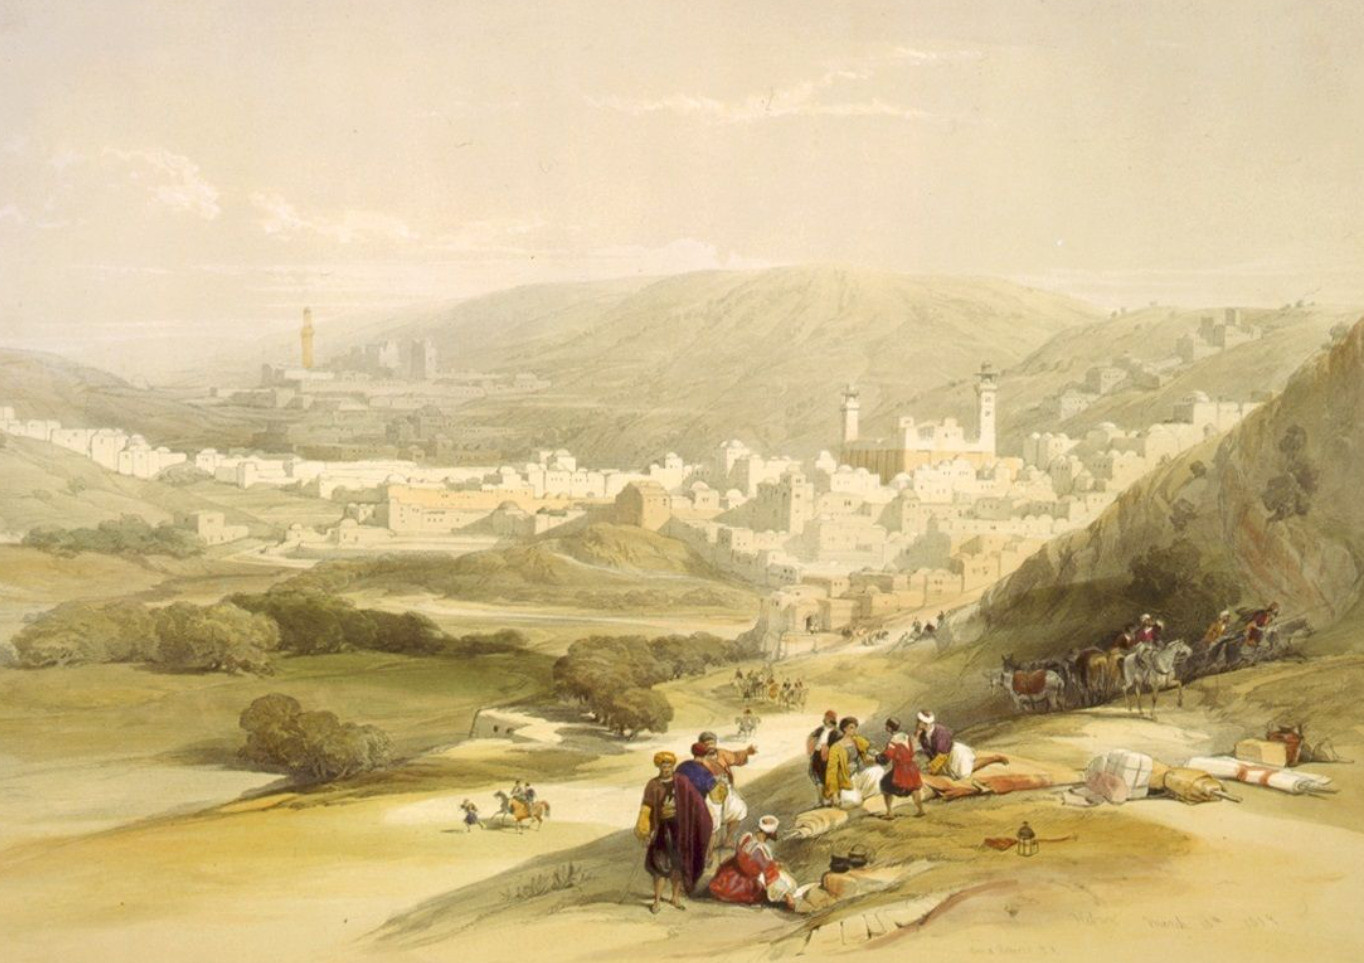 David Roberts tarafından yapılan El Halil tablosu, 1839.